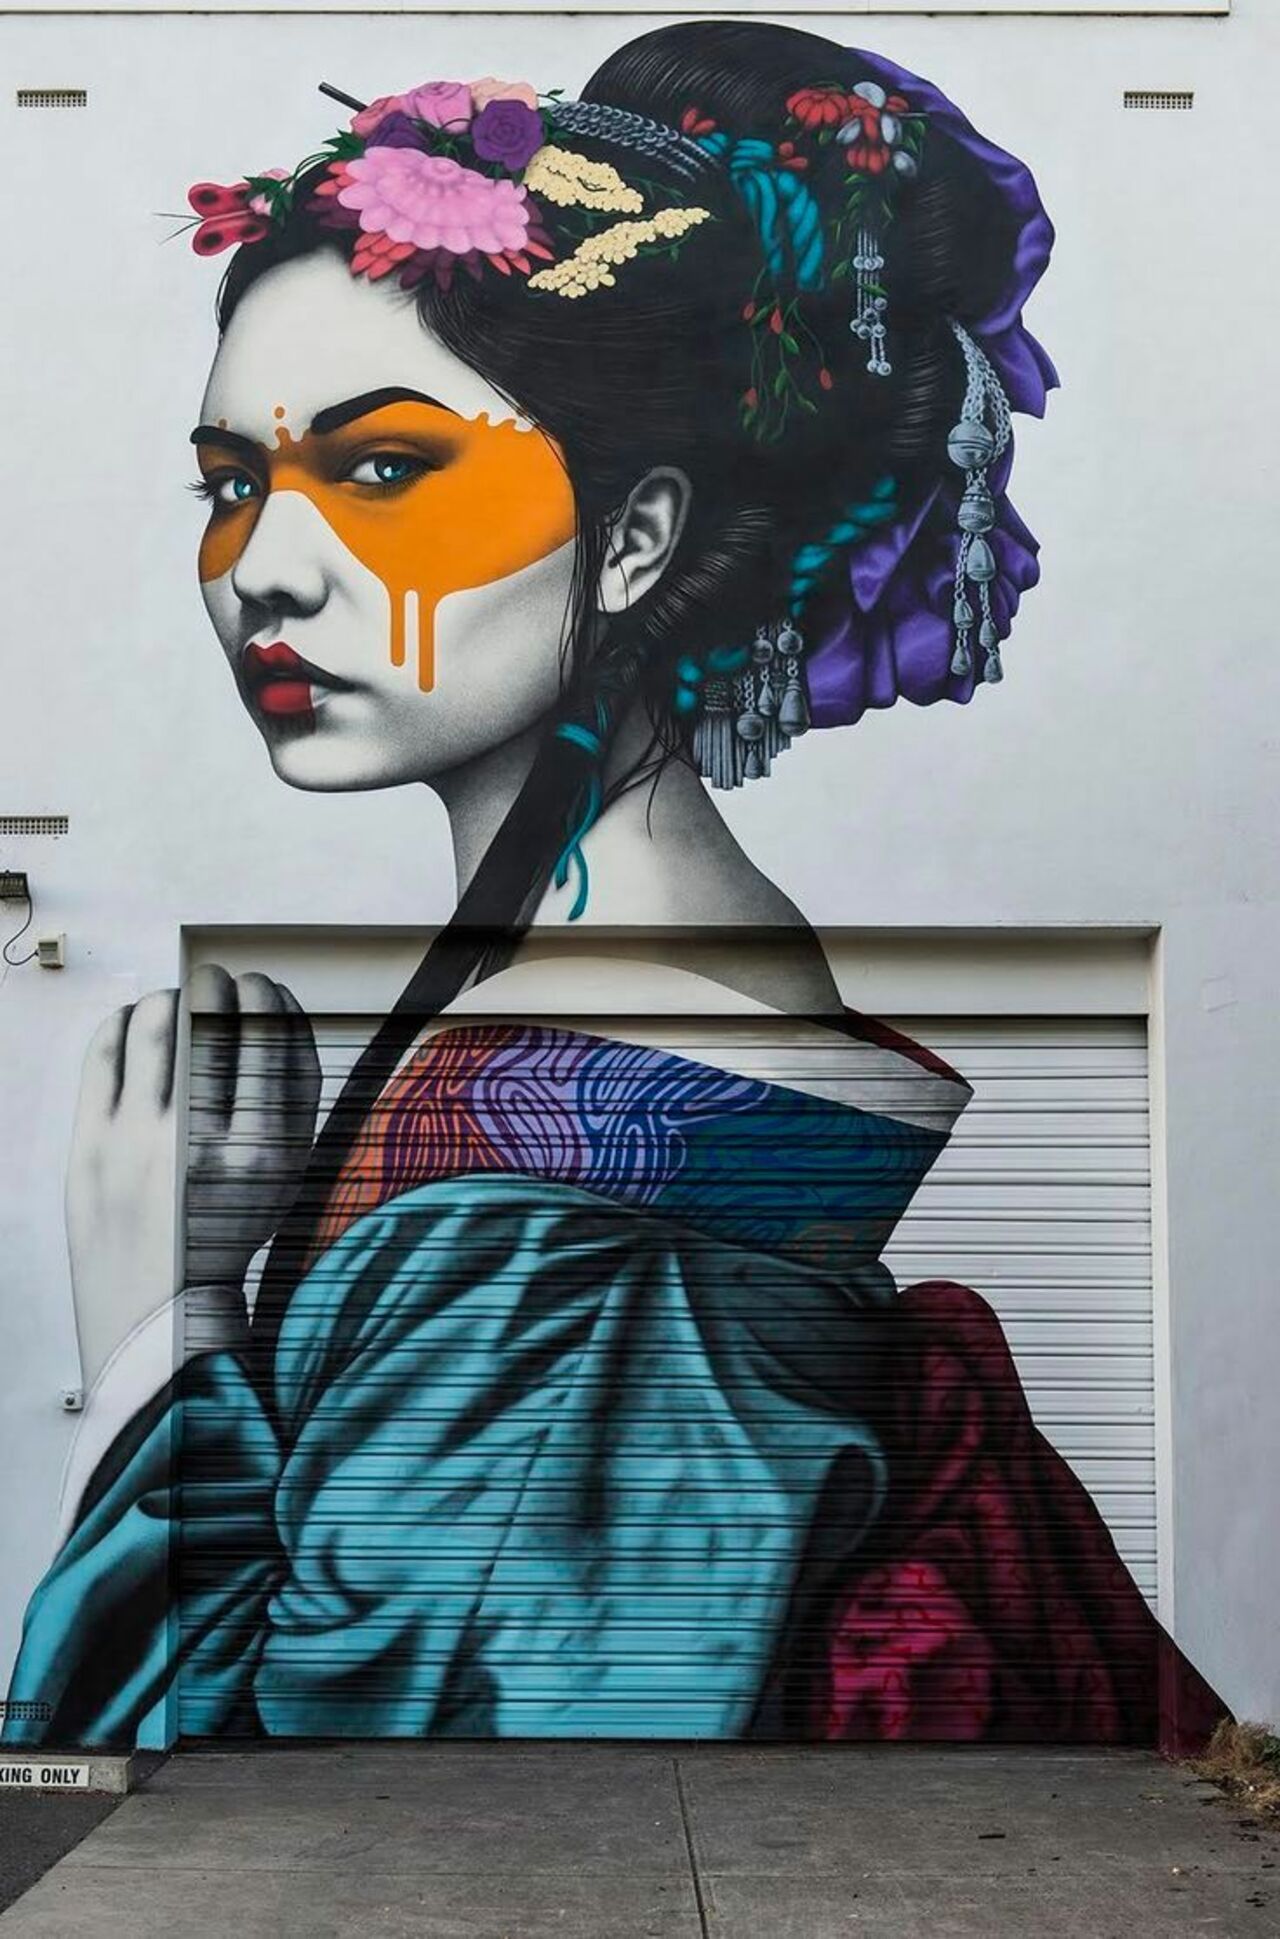 Fin DAC is easily one of my top 5 artists#streetart #mural #graffiti #art https://t.co/8KhmV3VzmQ